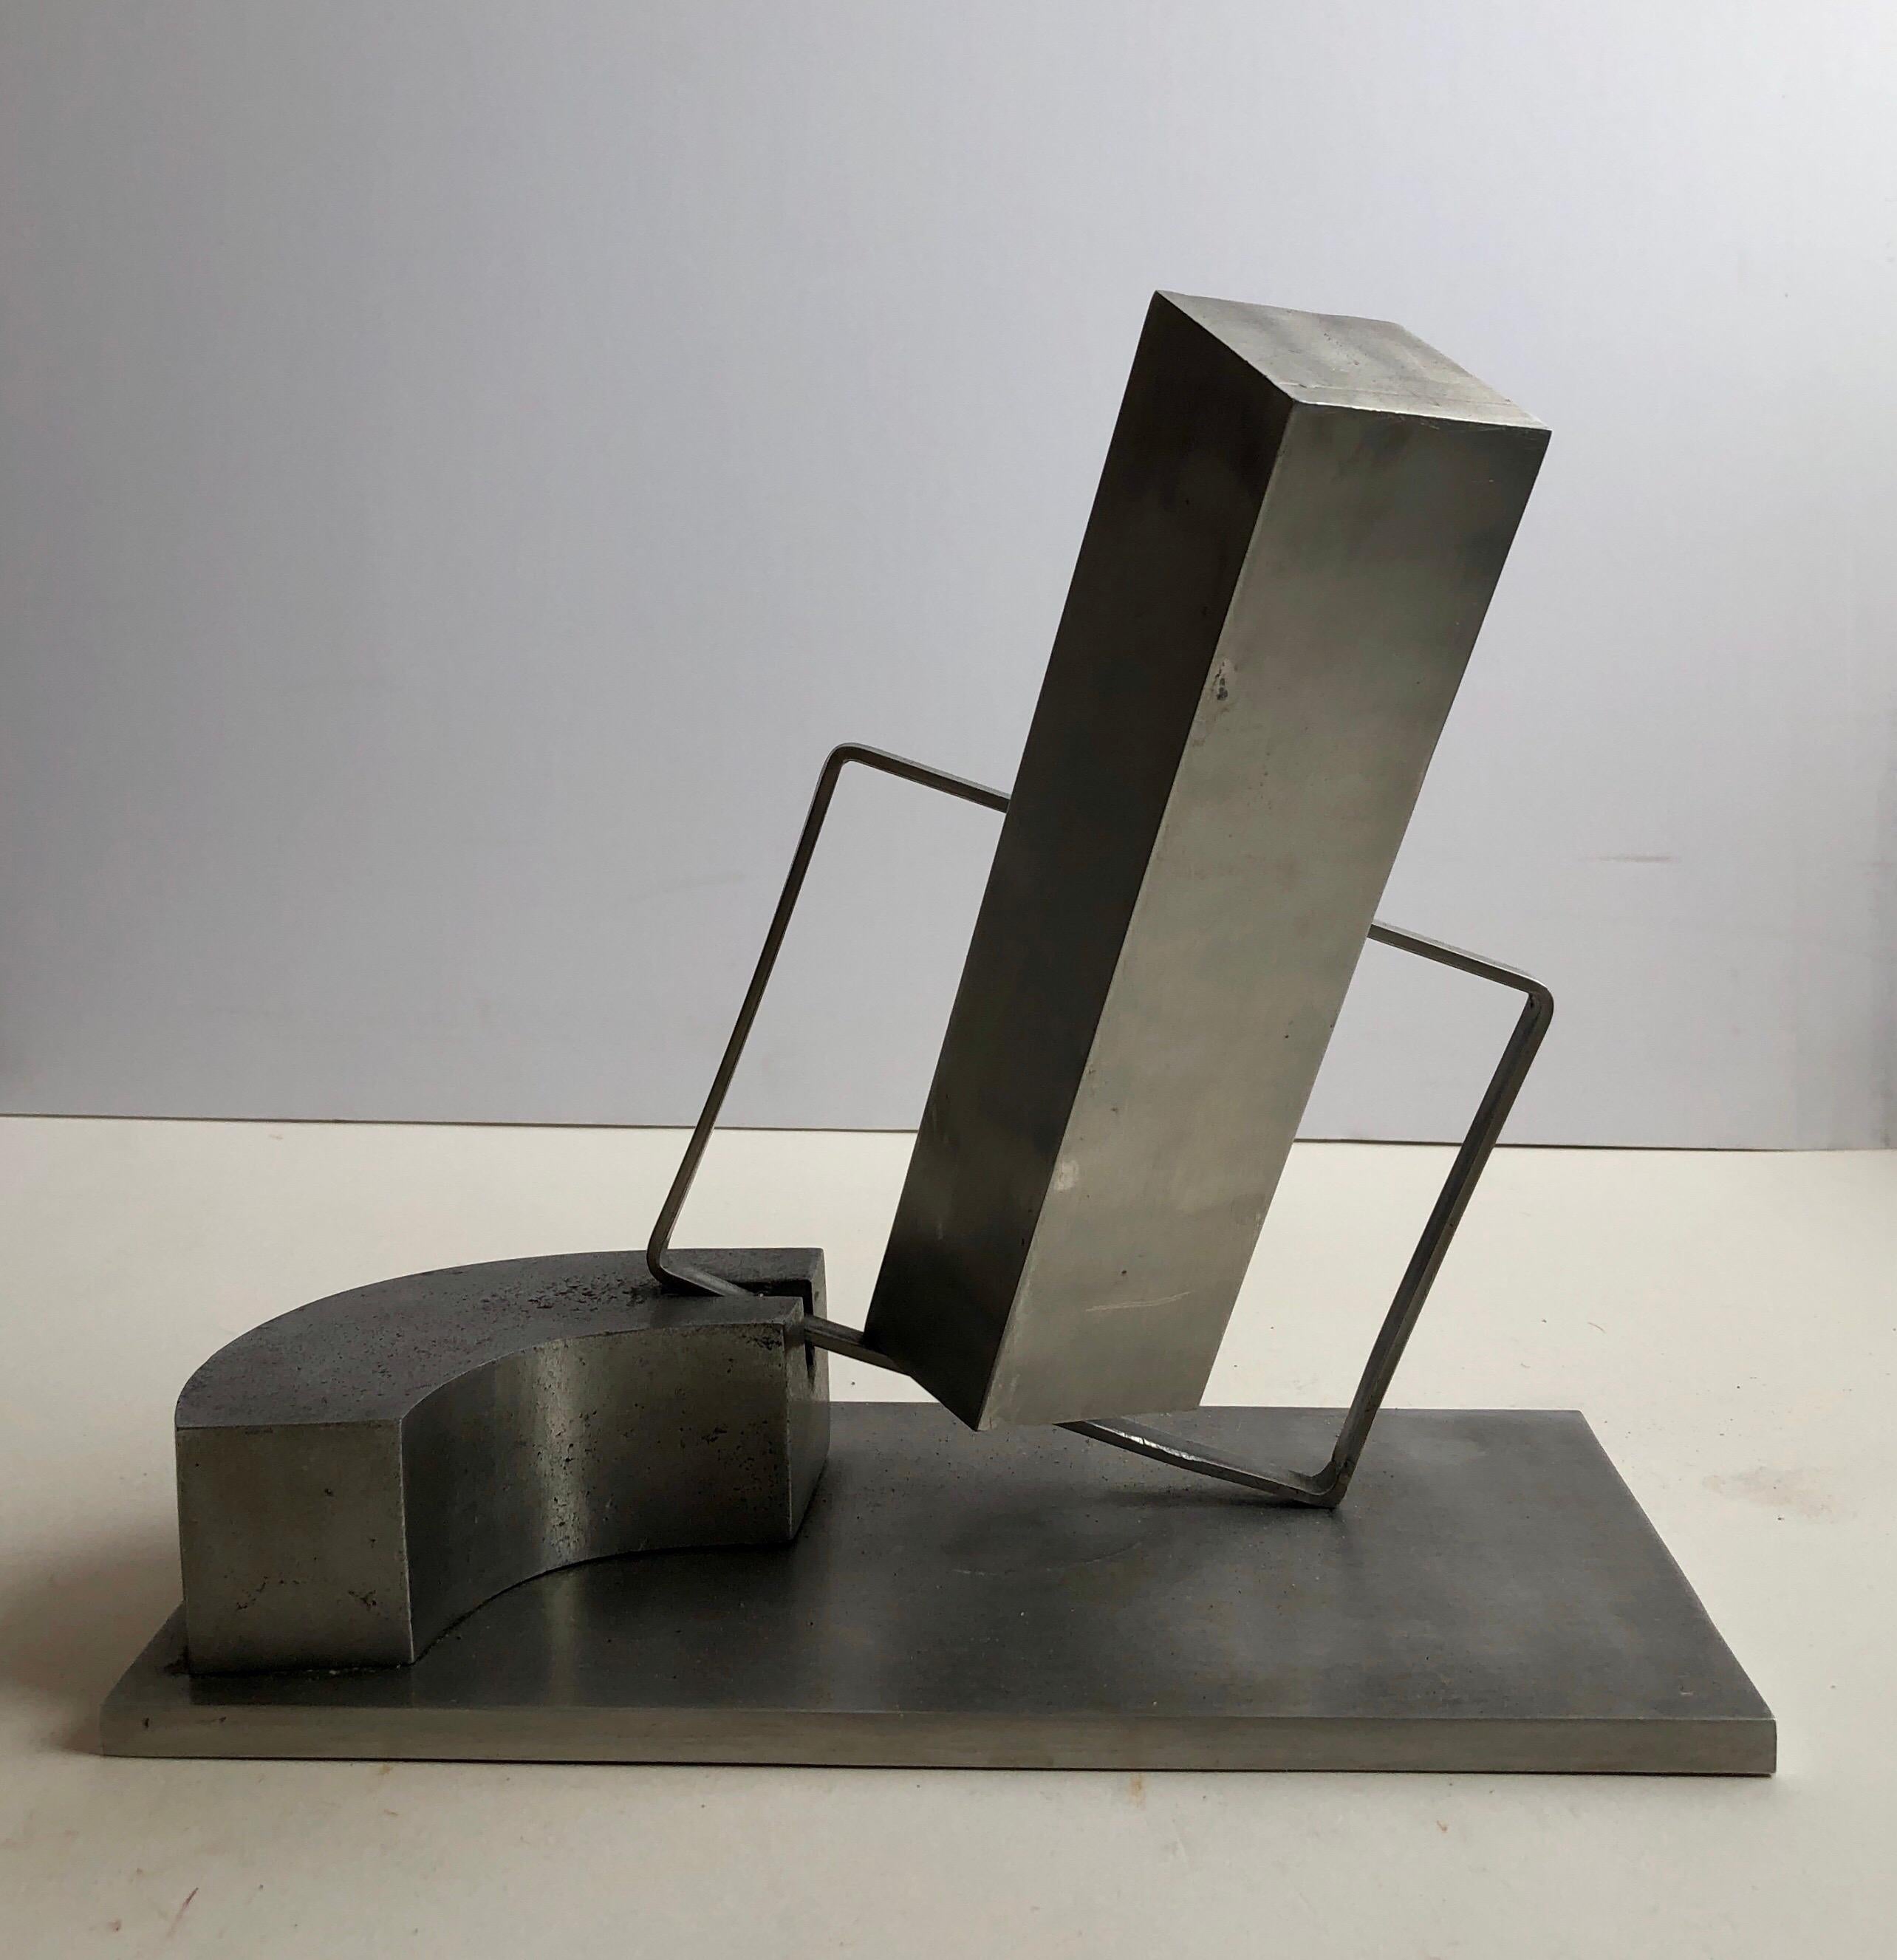 1969 Israeli Abstract Sculpture Stainless Steel Menashe Kadishman Suspension 3